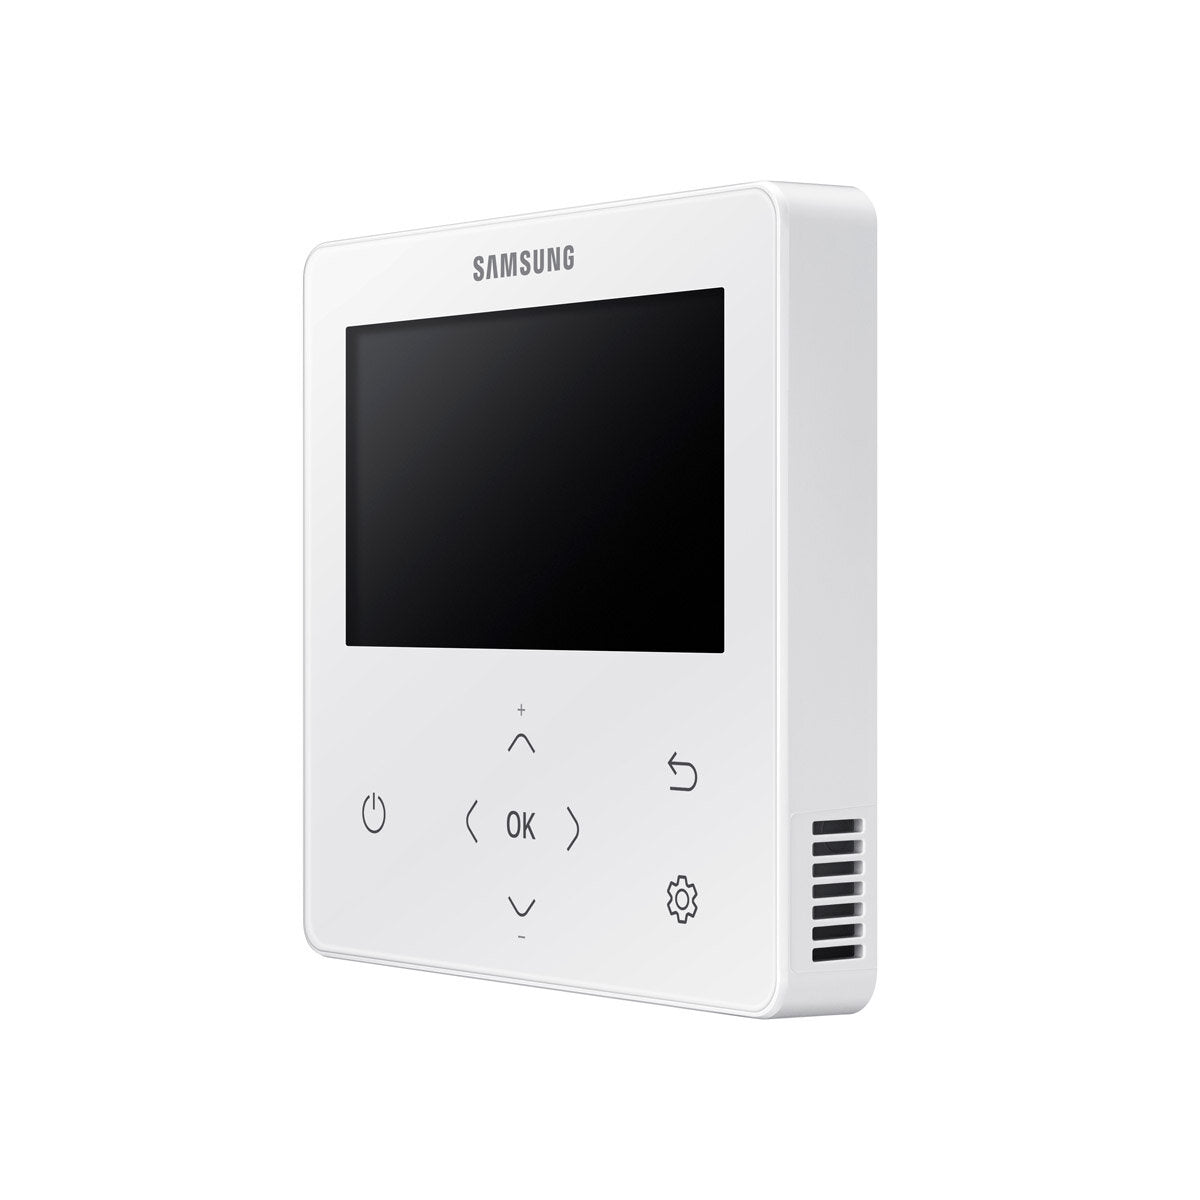 Samsung Klimaanlage Windfree 4-Wege Trial Split 7000 + 12000 + 12000 BTU Inverter A++ Außengerät 6,8 kW